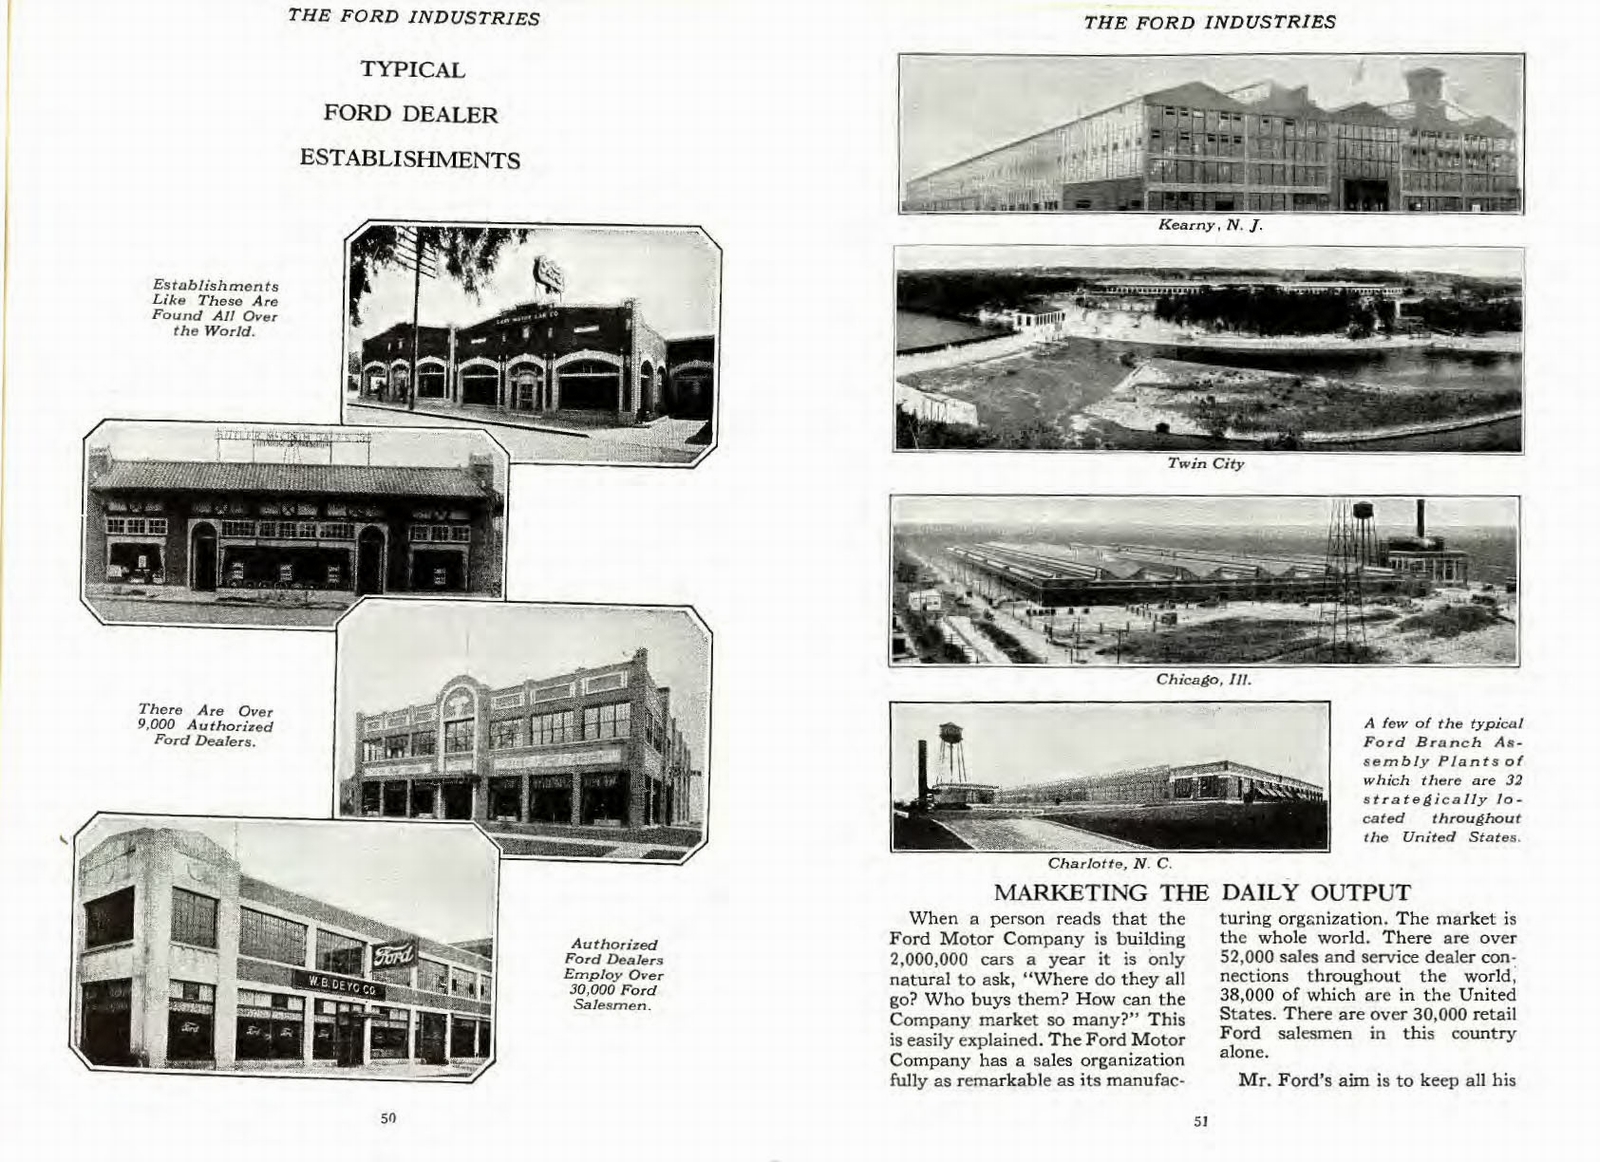 n_1926 Ford Industries-50-51.jpg